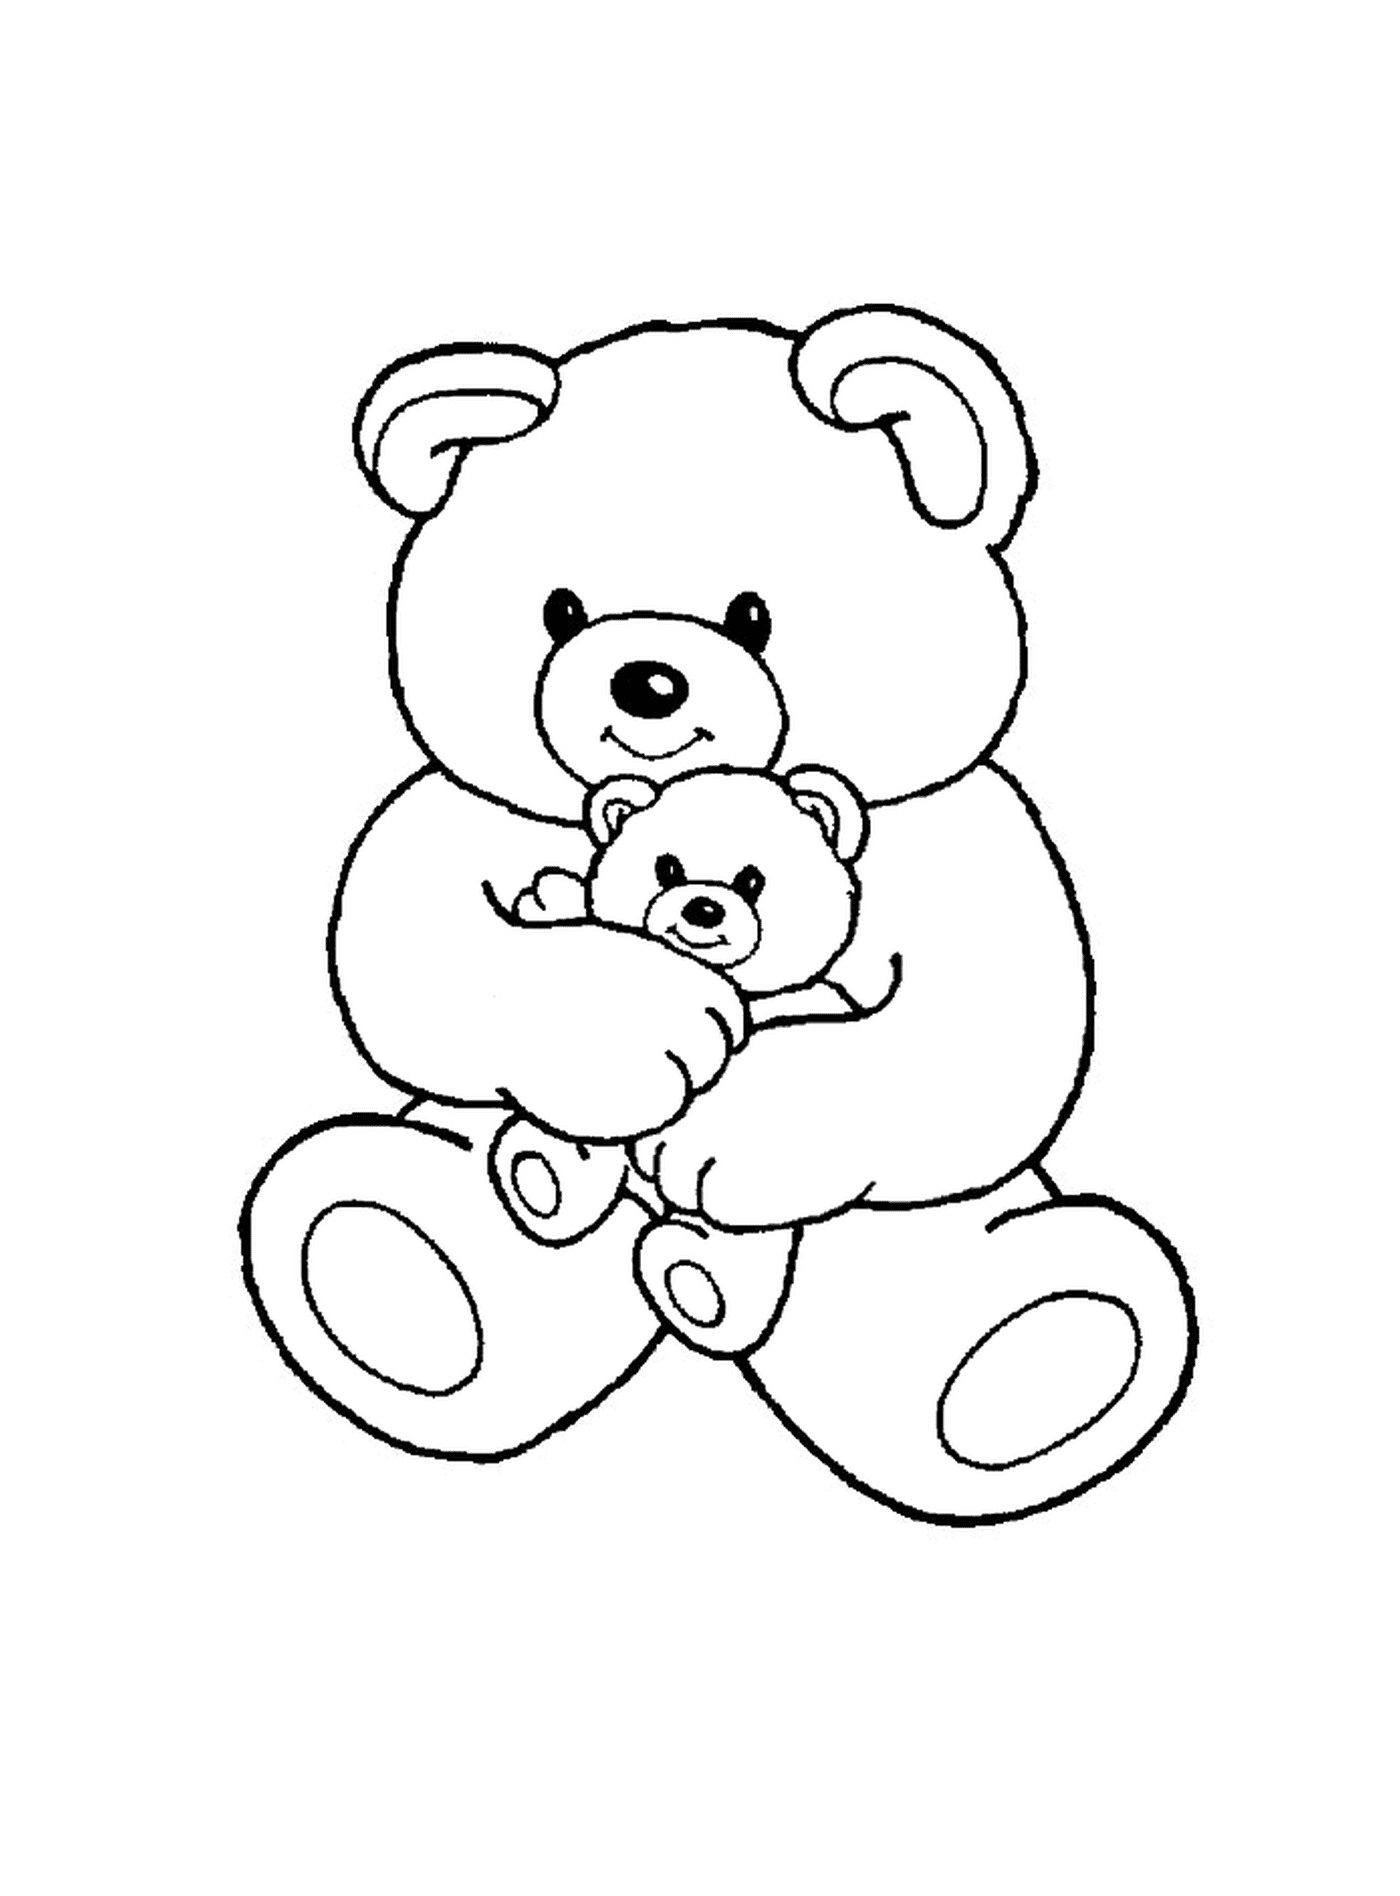  熊熊与幼熊 